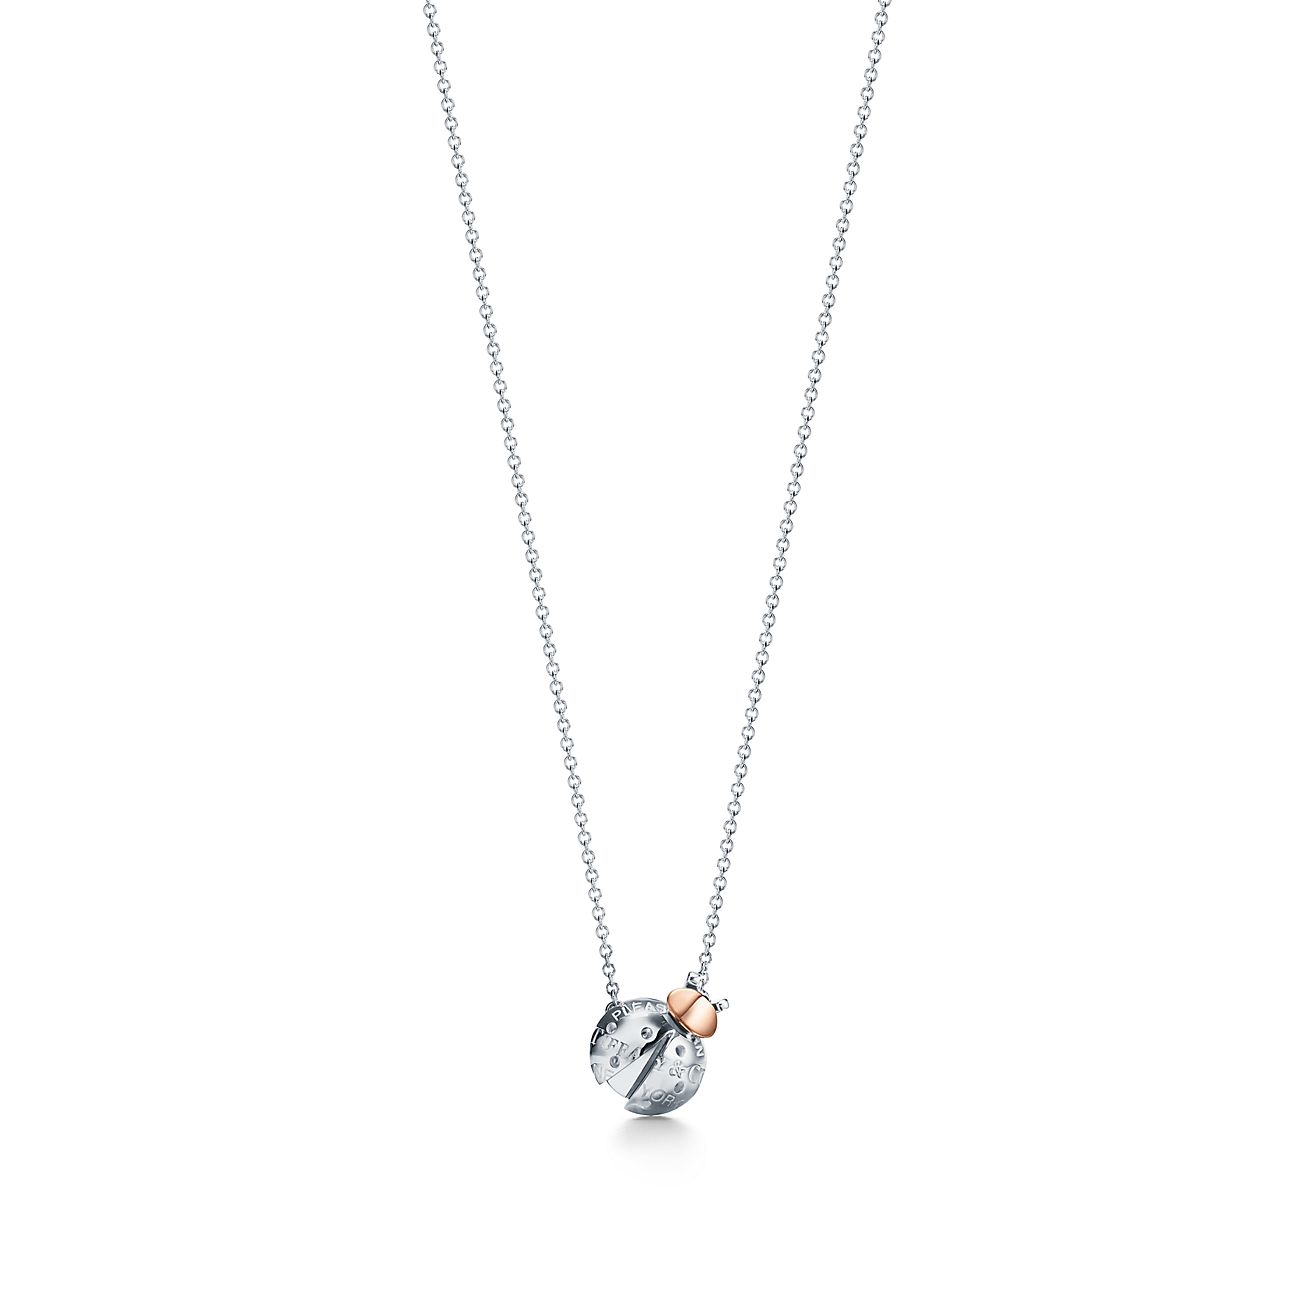 Tiffany & Co. Sterling Silver Ladybug Love Pendant Necklace | eBay